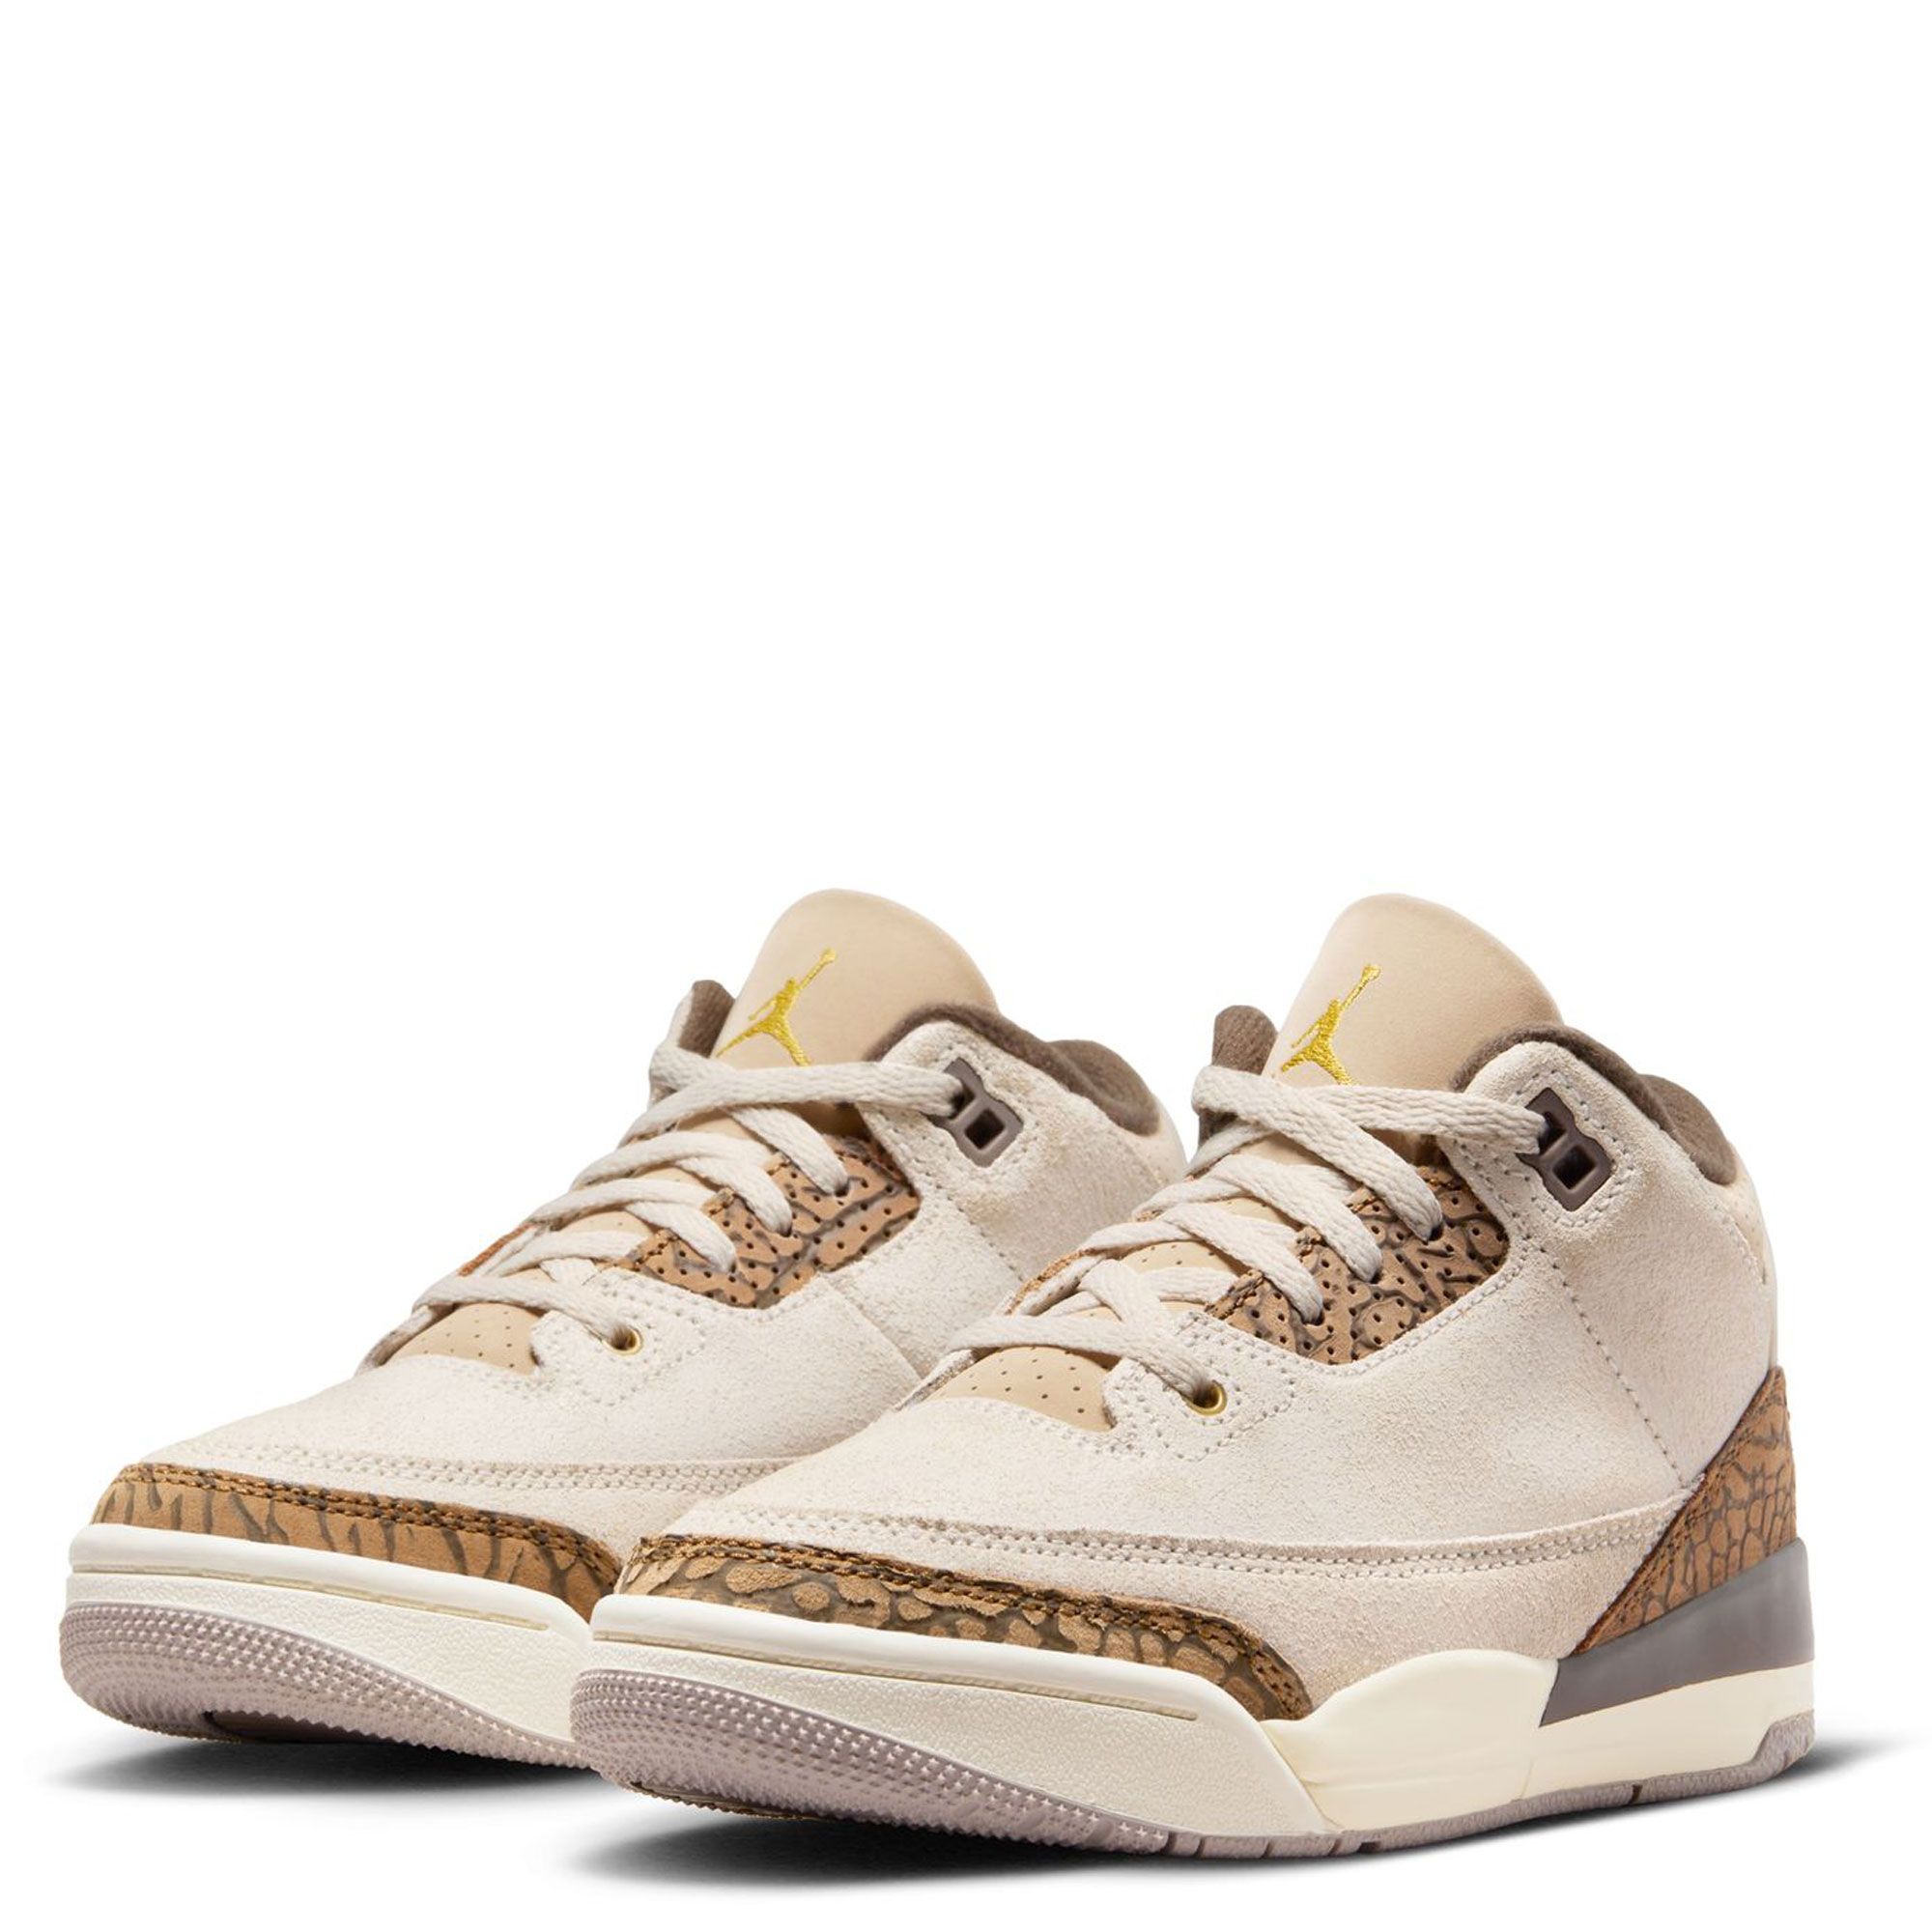 Nike Jordan 3 Palomino Mens Shoes Size 8-12 new sneakers